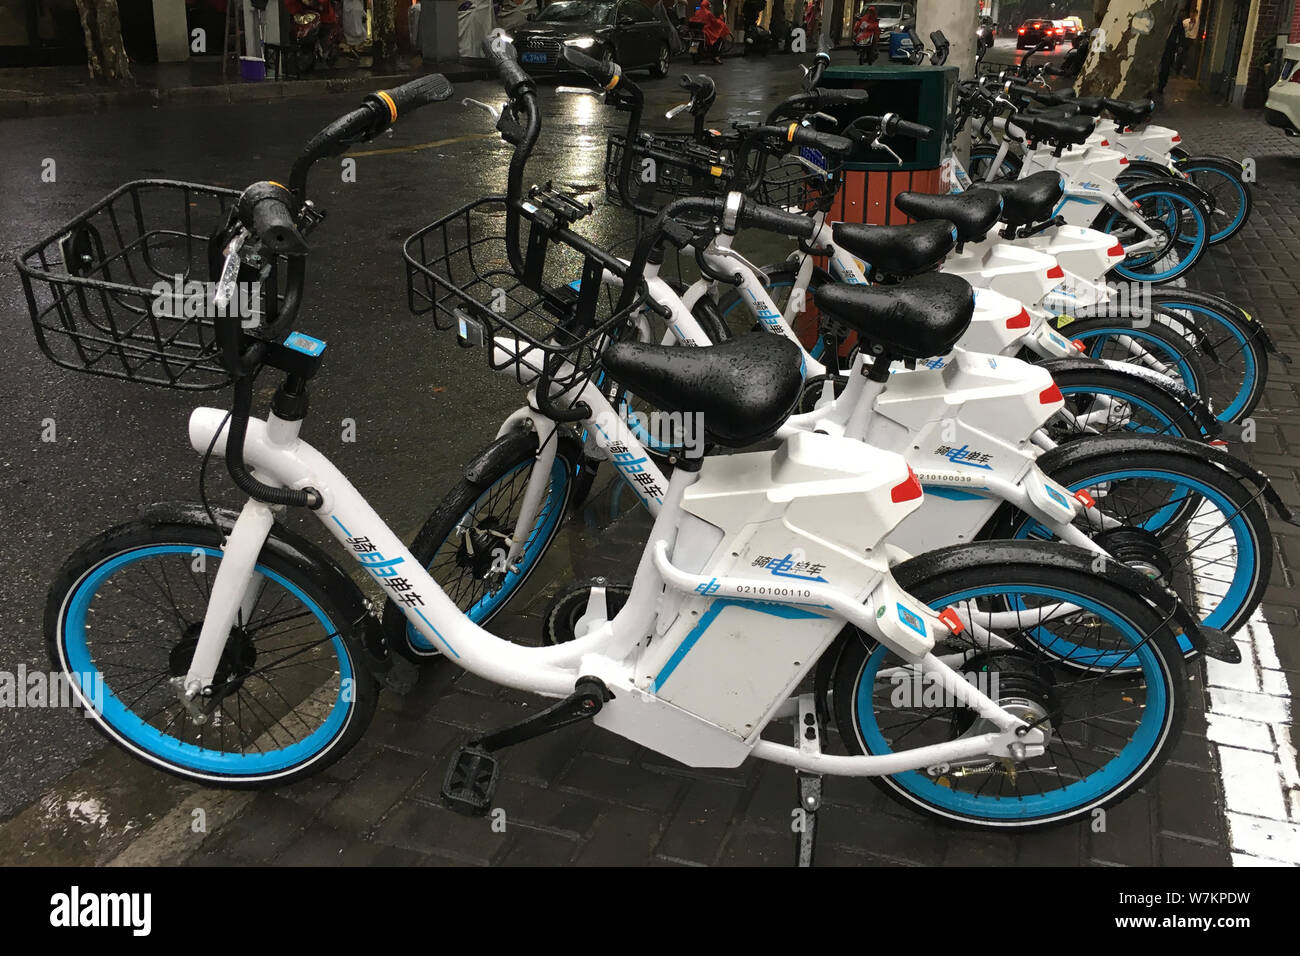 Fahrräder der Chinesischen e-bike-sharing service Qidian werden auf einer  Straße in Shanghai, China, 5. August 2017 gesäumt. Fahrräder der  Chinesischen elektrische bi Stockfotografie - Alamy